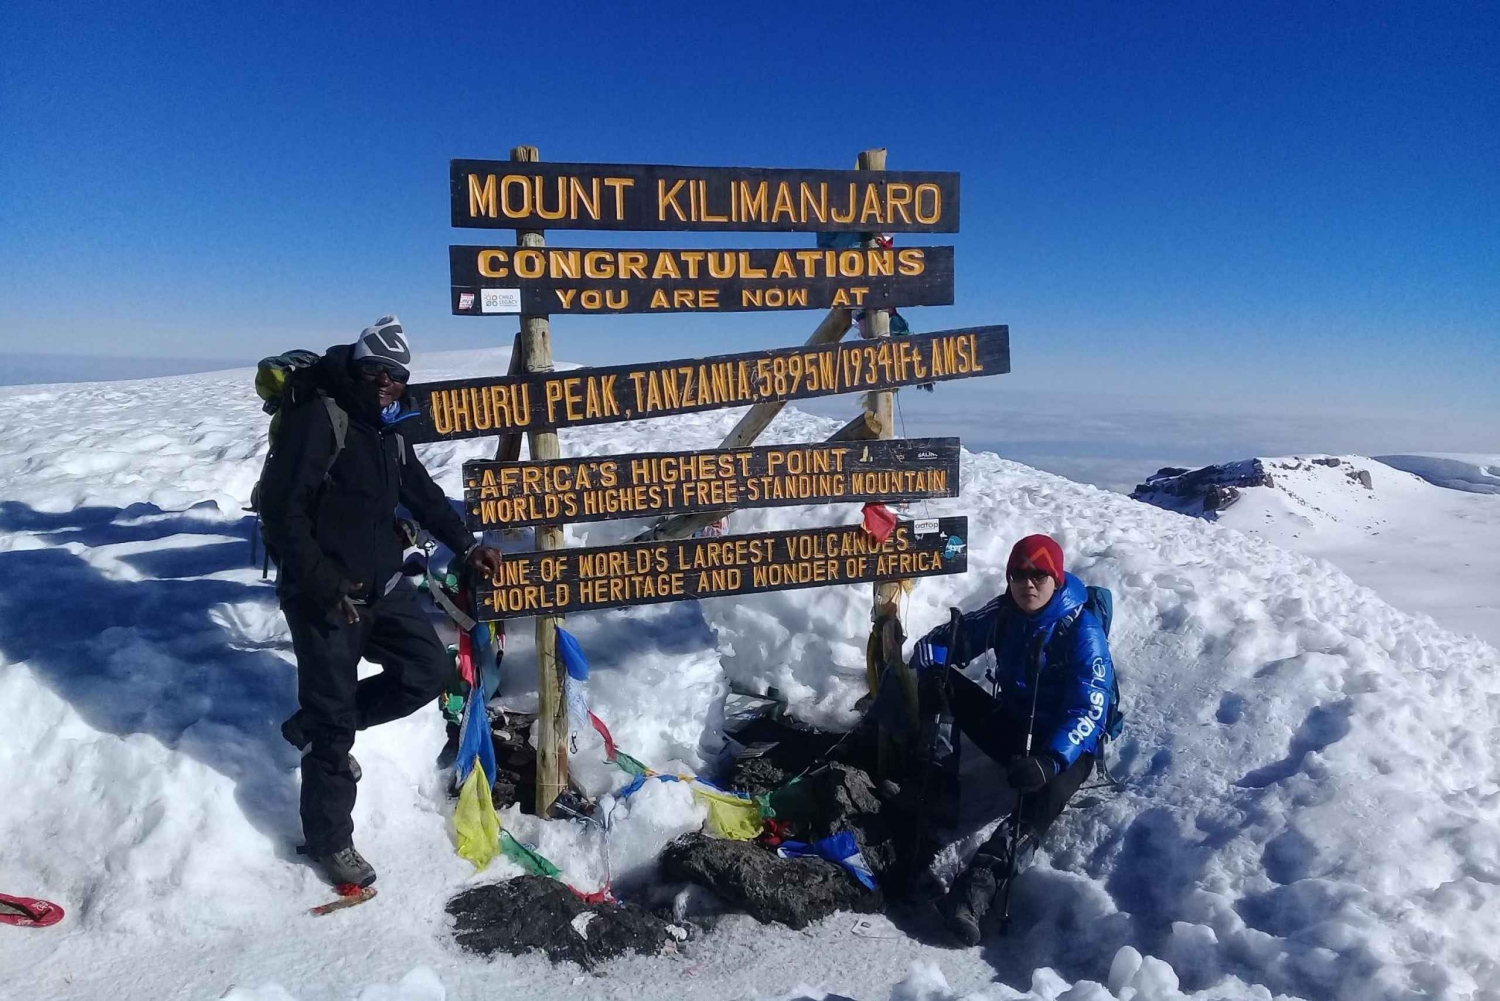 Kilimanjaro 6-daagse trekking Marangu route